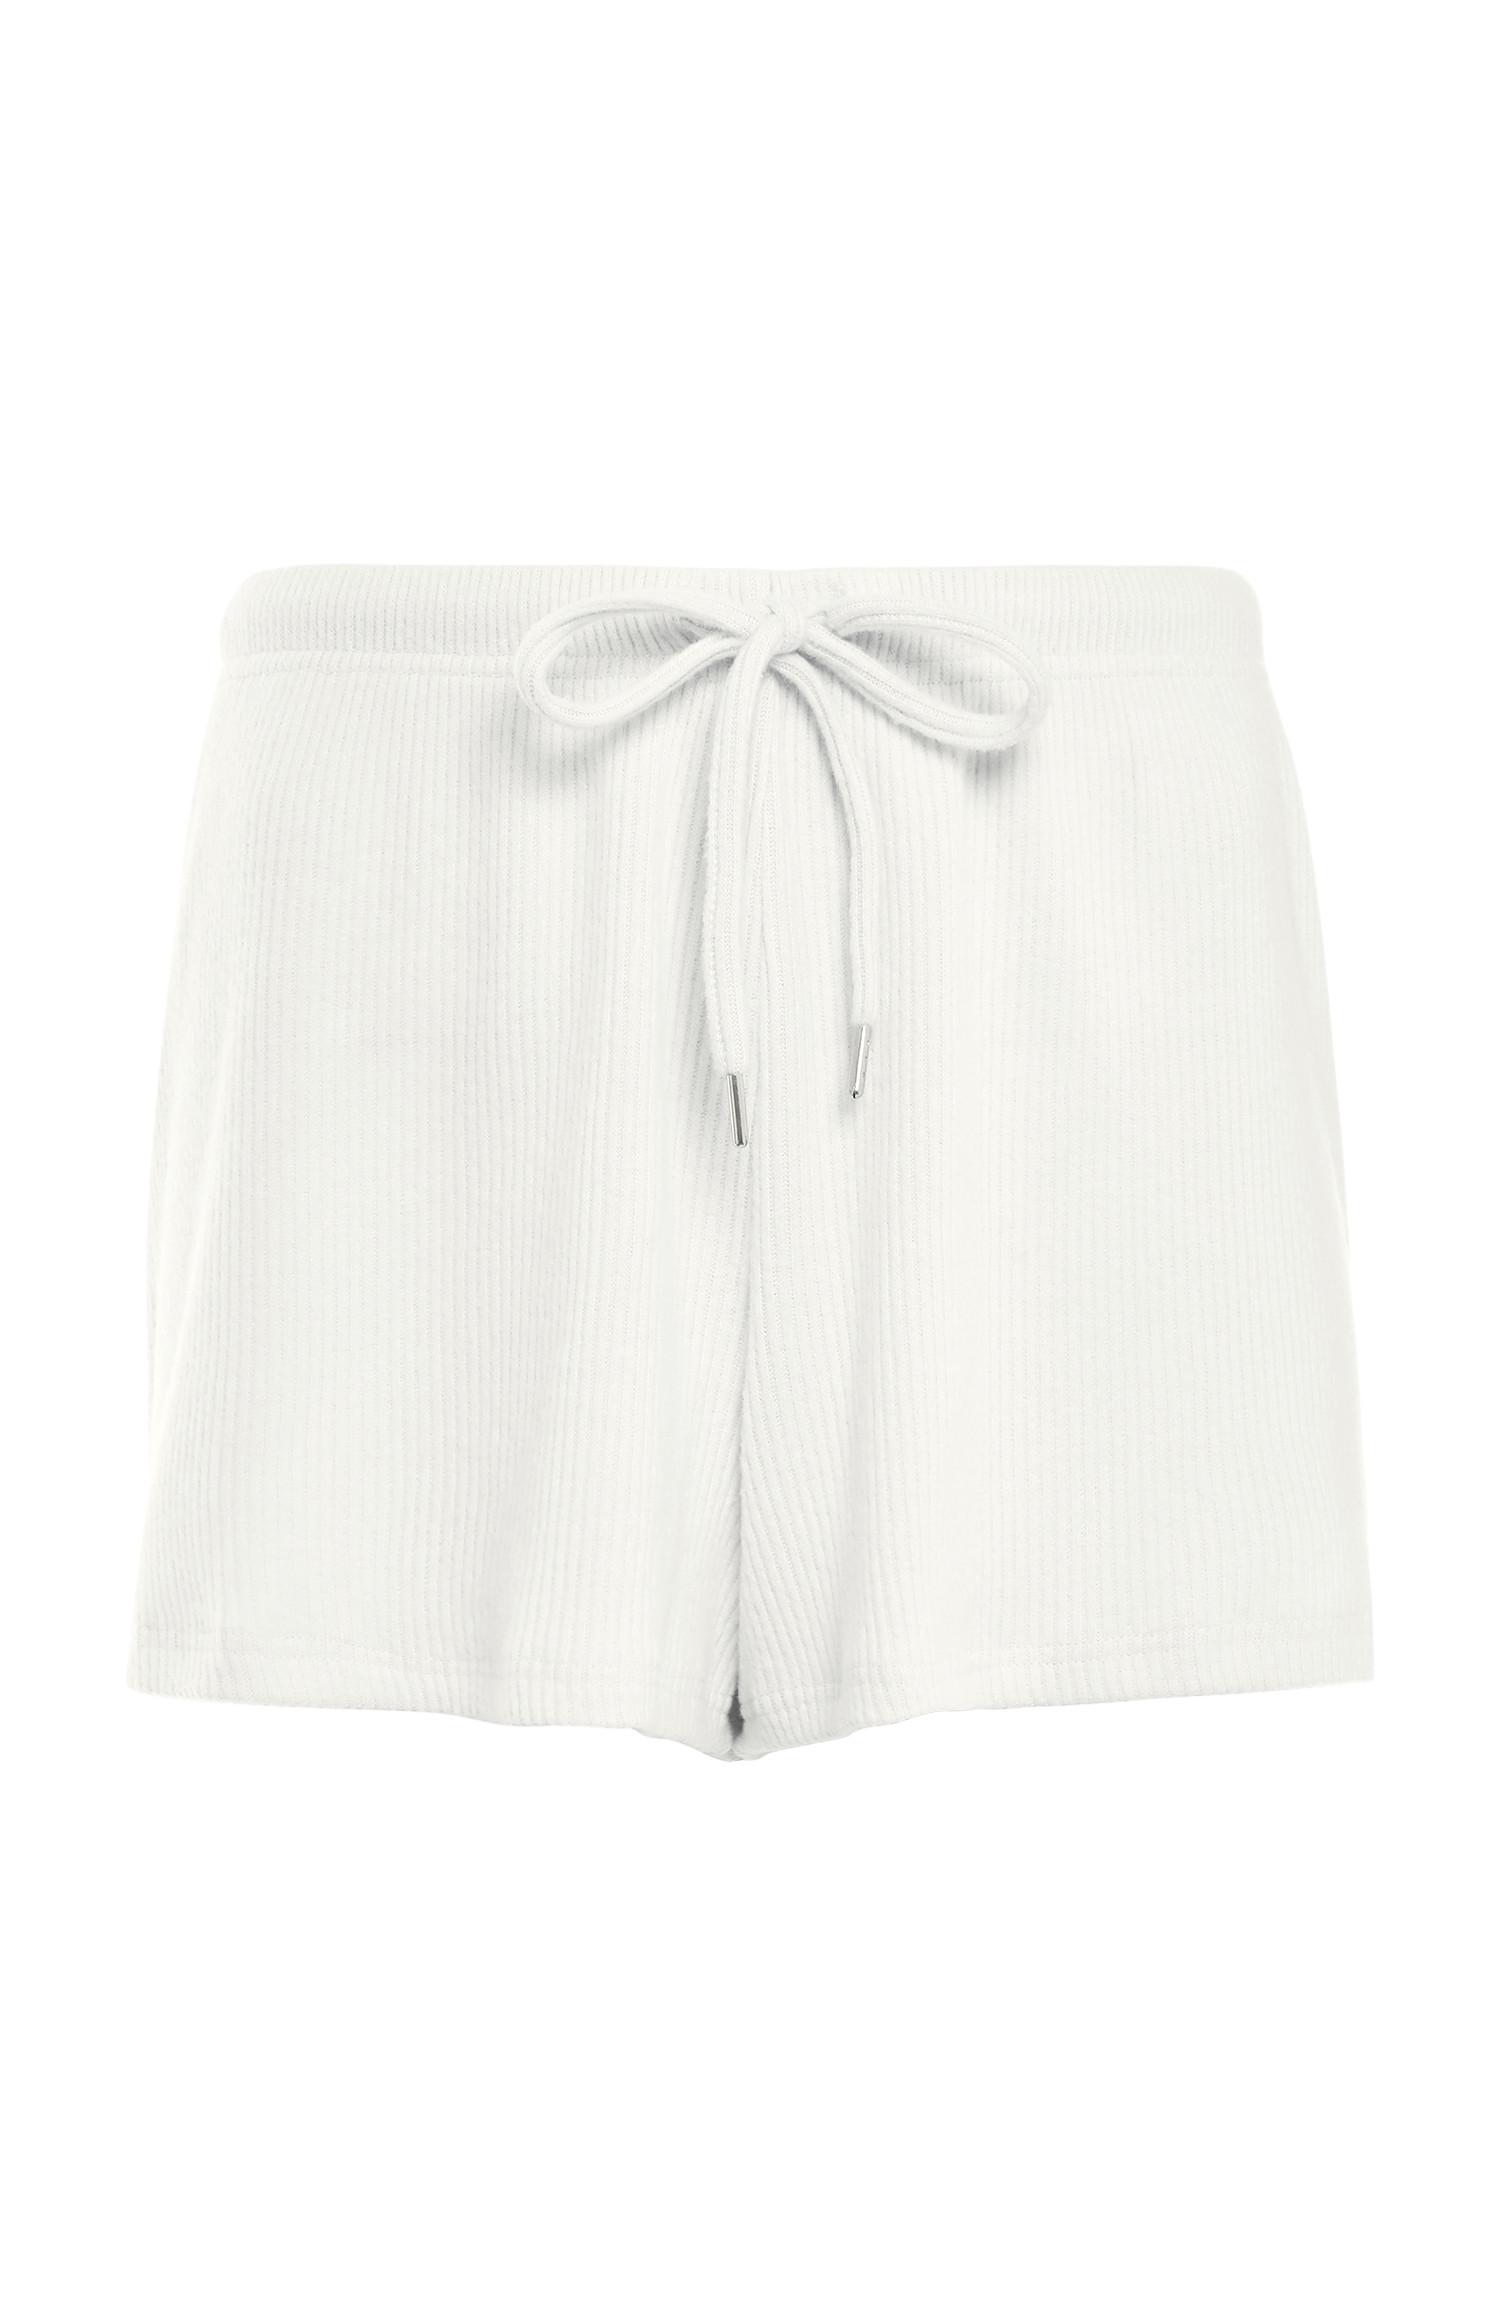 White Ribbed Supersoft Shorts | Women's Pyjamas | Women's Clothing ...